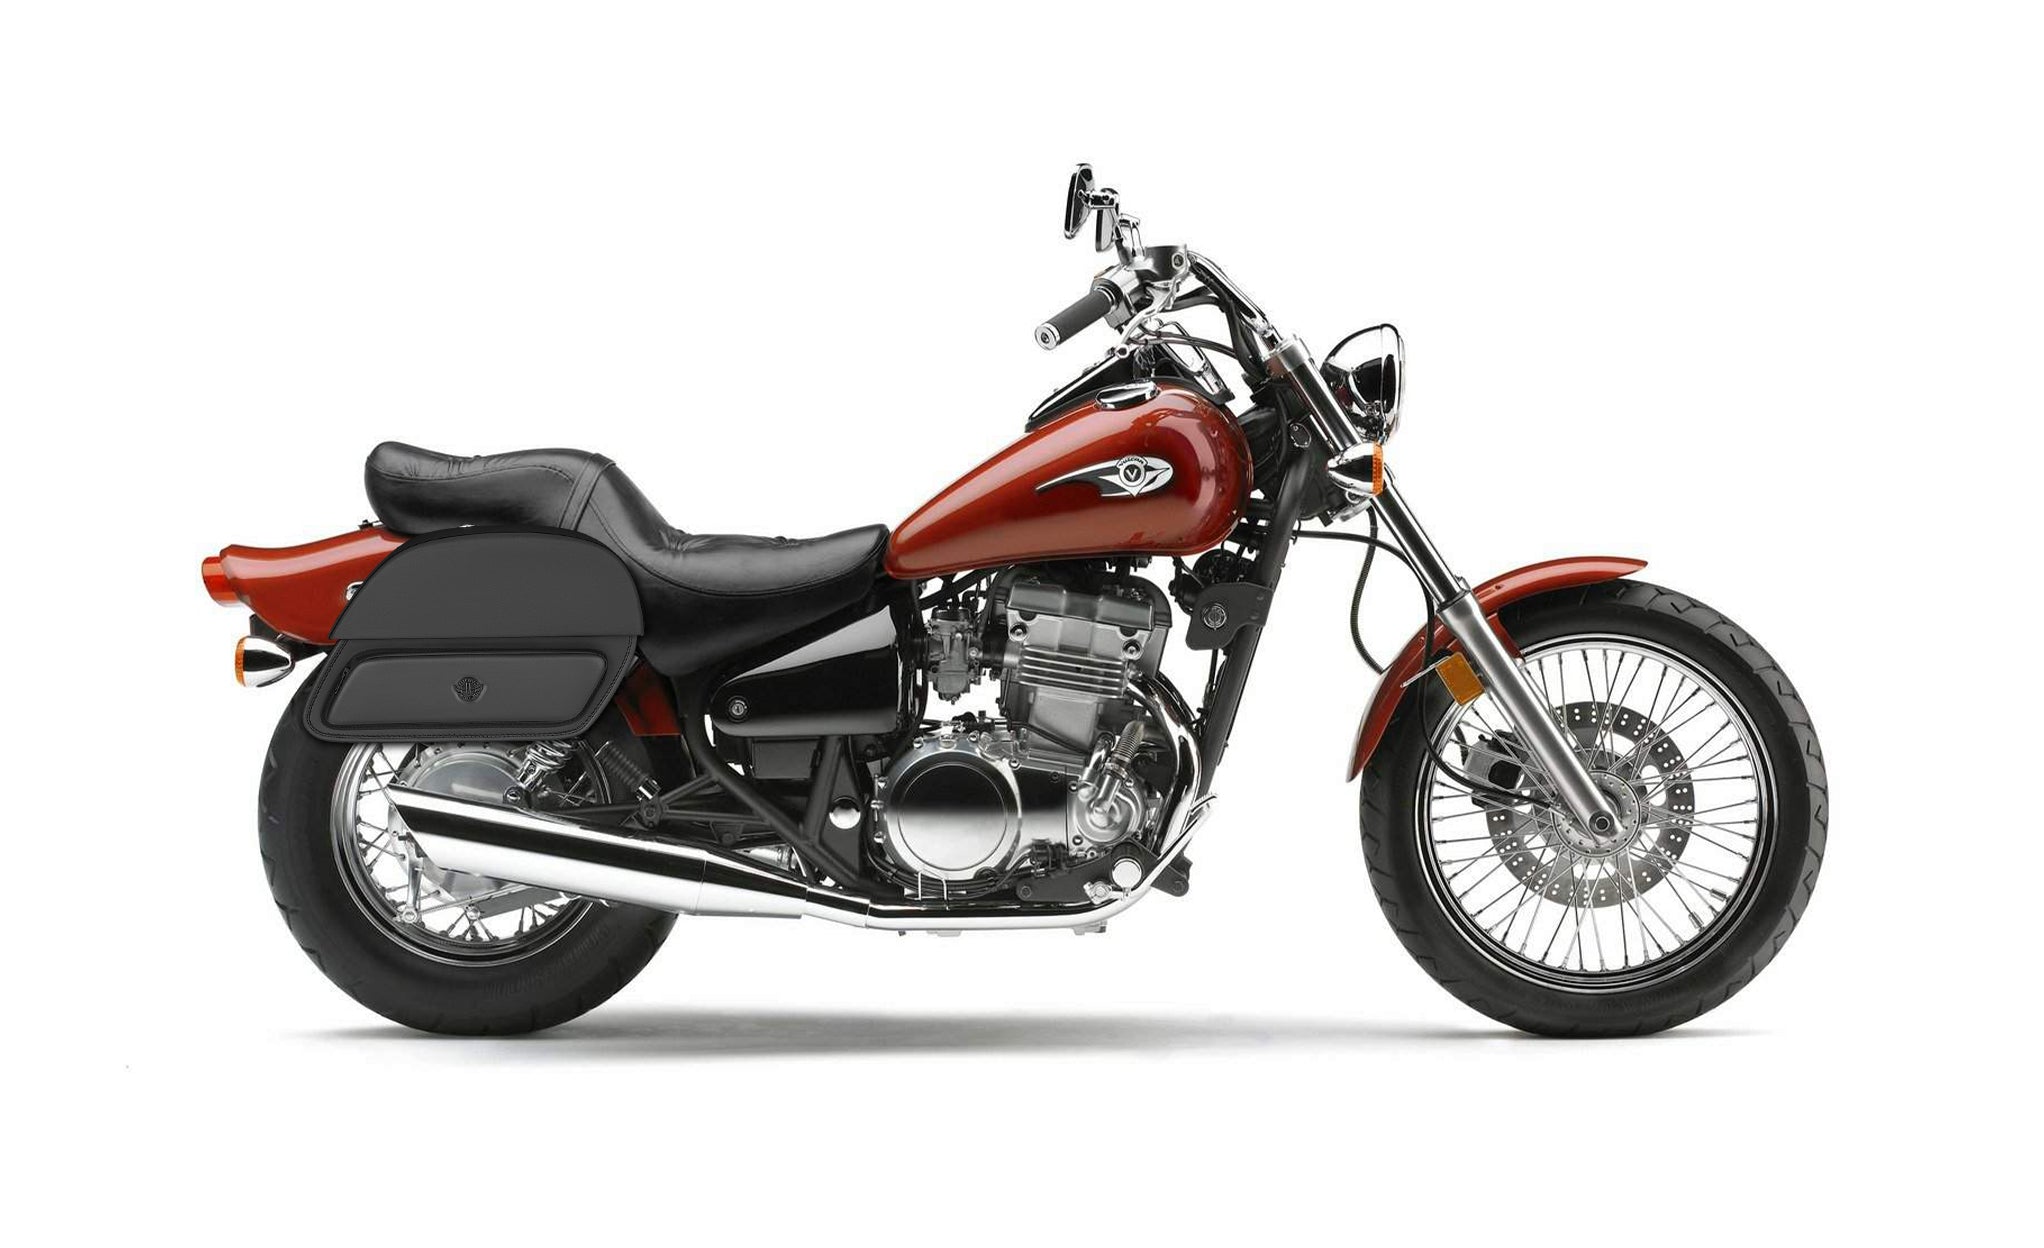 28L - Pantheon Medium Vulcan 500 EN500 Motorcycle Saddlebags @expand